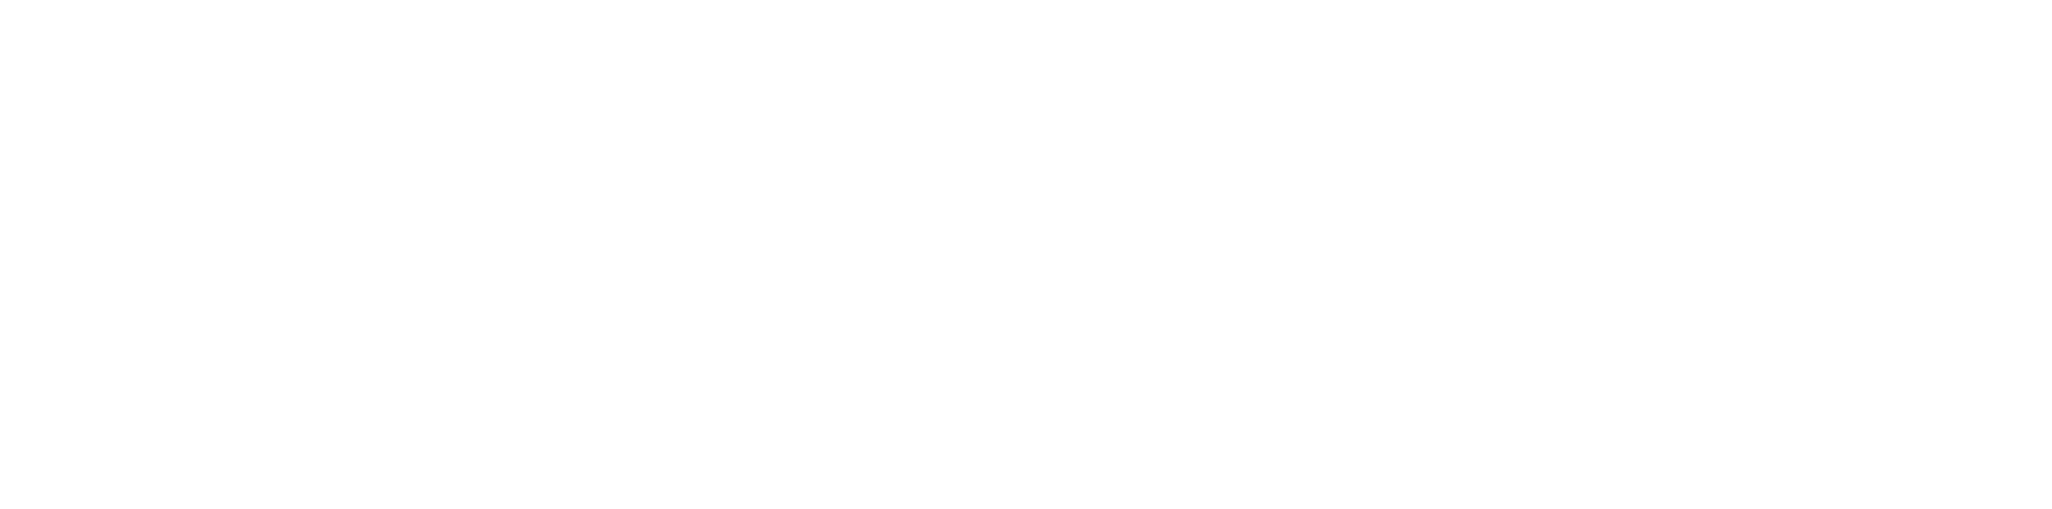 Eastleigh Film Festival